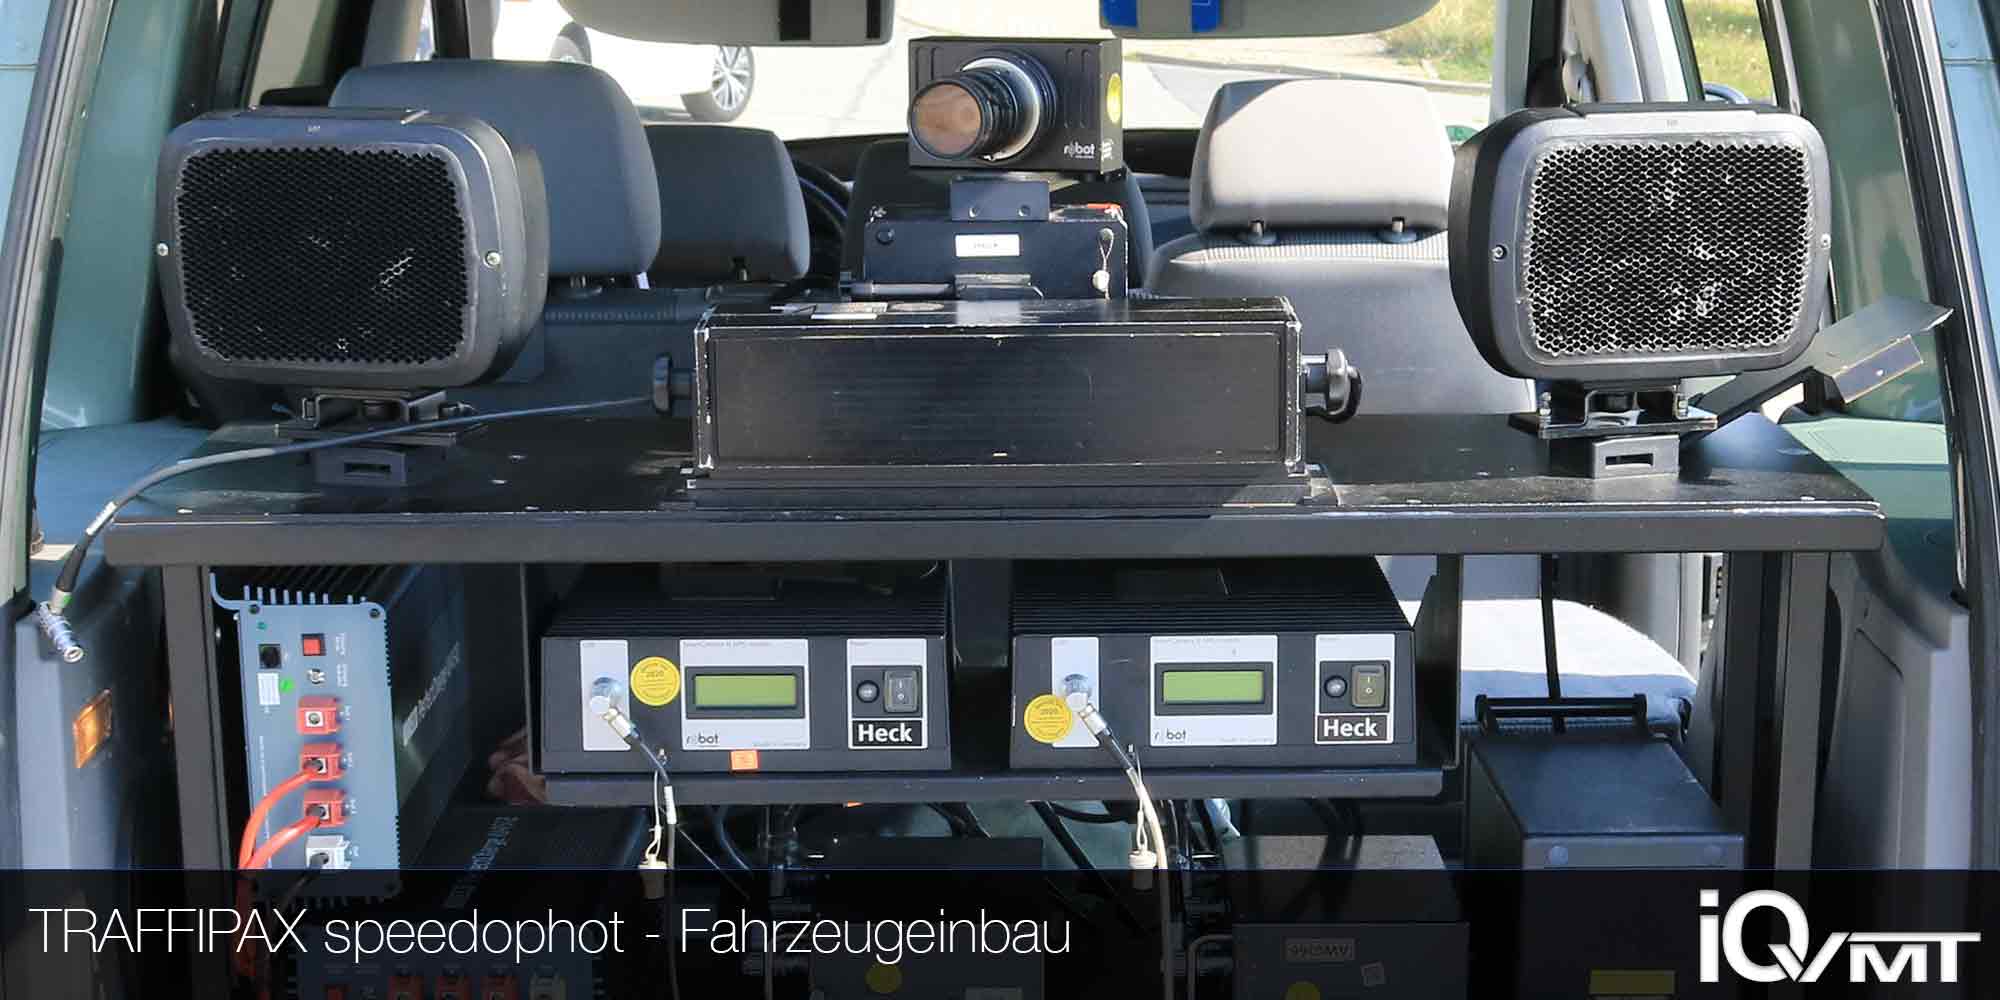 Radar-Messanlage Traffipax Speedophot als Fahrzeugheckeinbau iQvmt